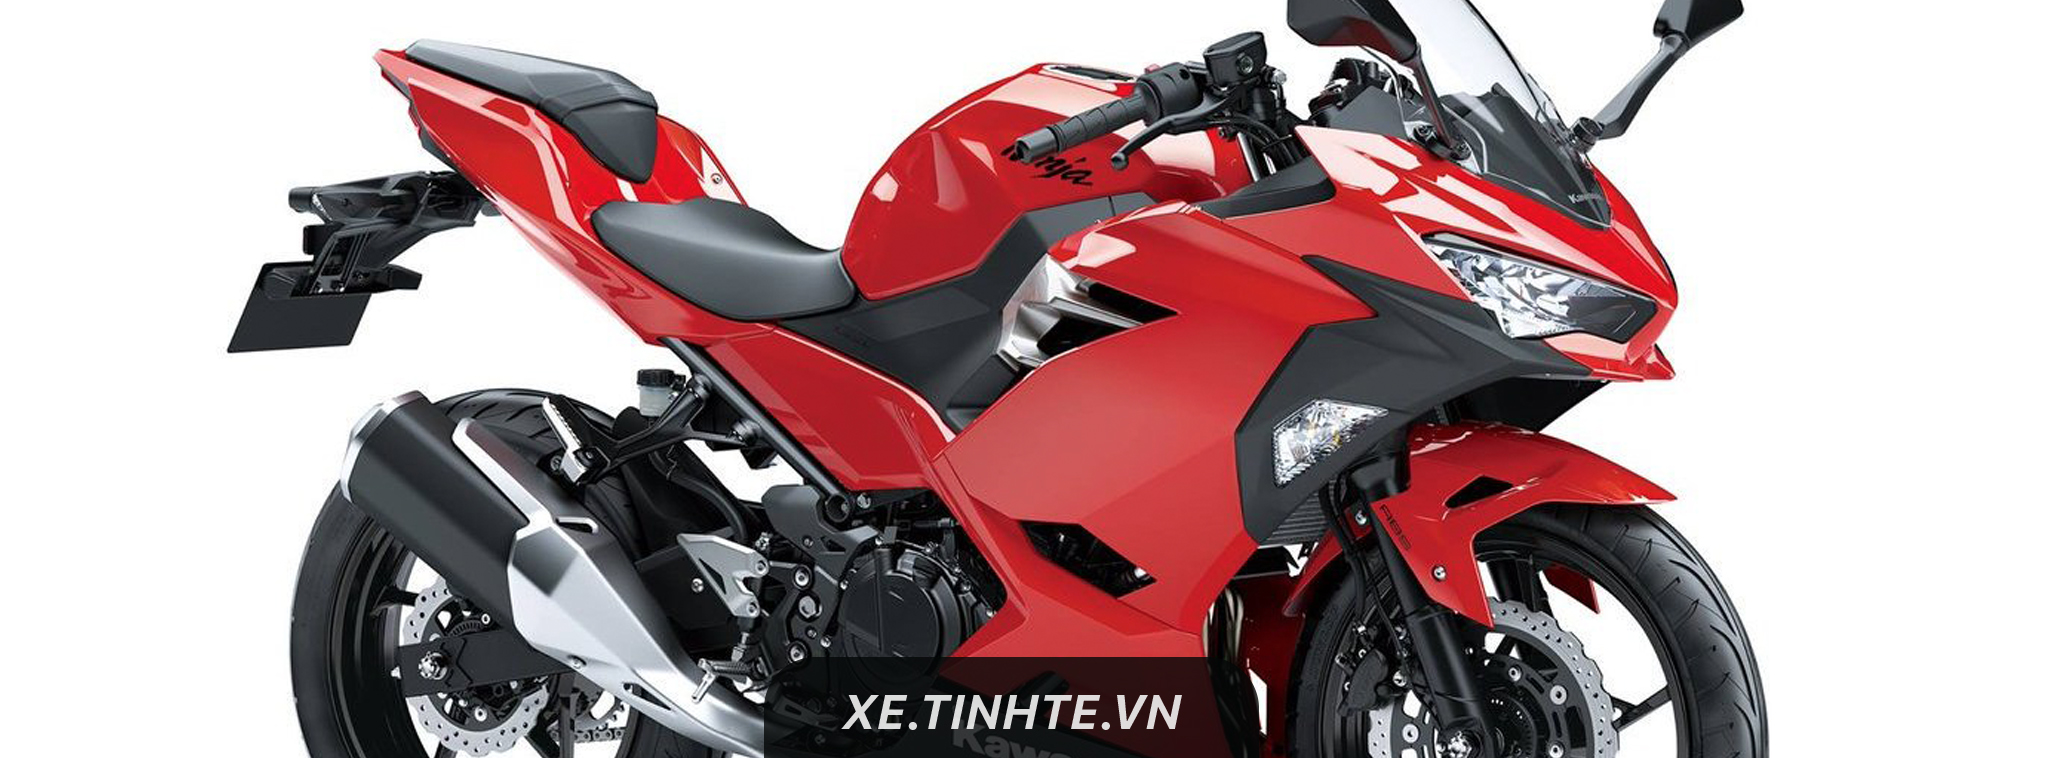 Kawasaki nâng cấp Ninja 250 2018, thiết kế mới, động cơ 2 xy lanh, mạnh hơn trước, từ 4.600 USD